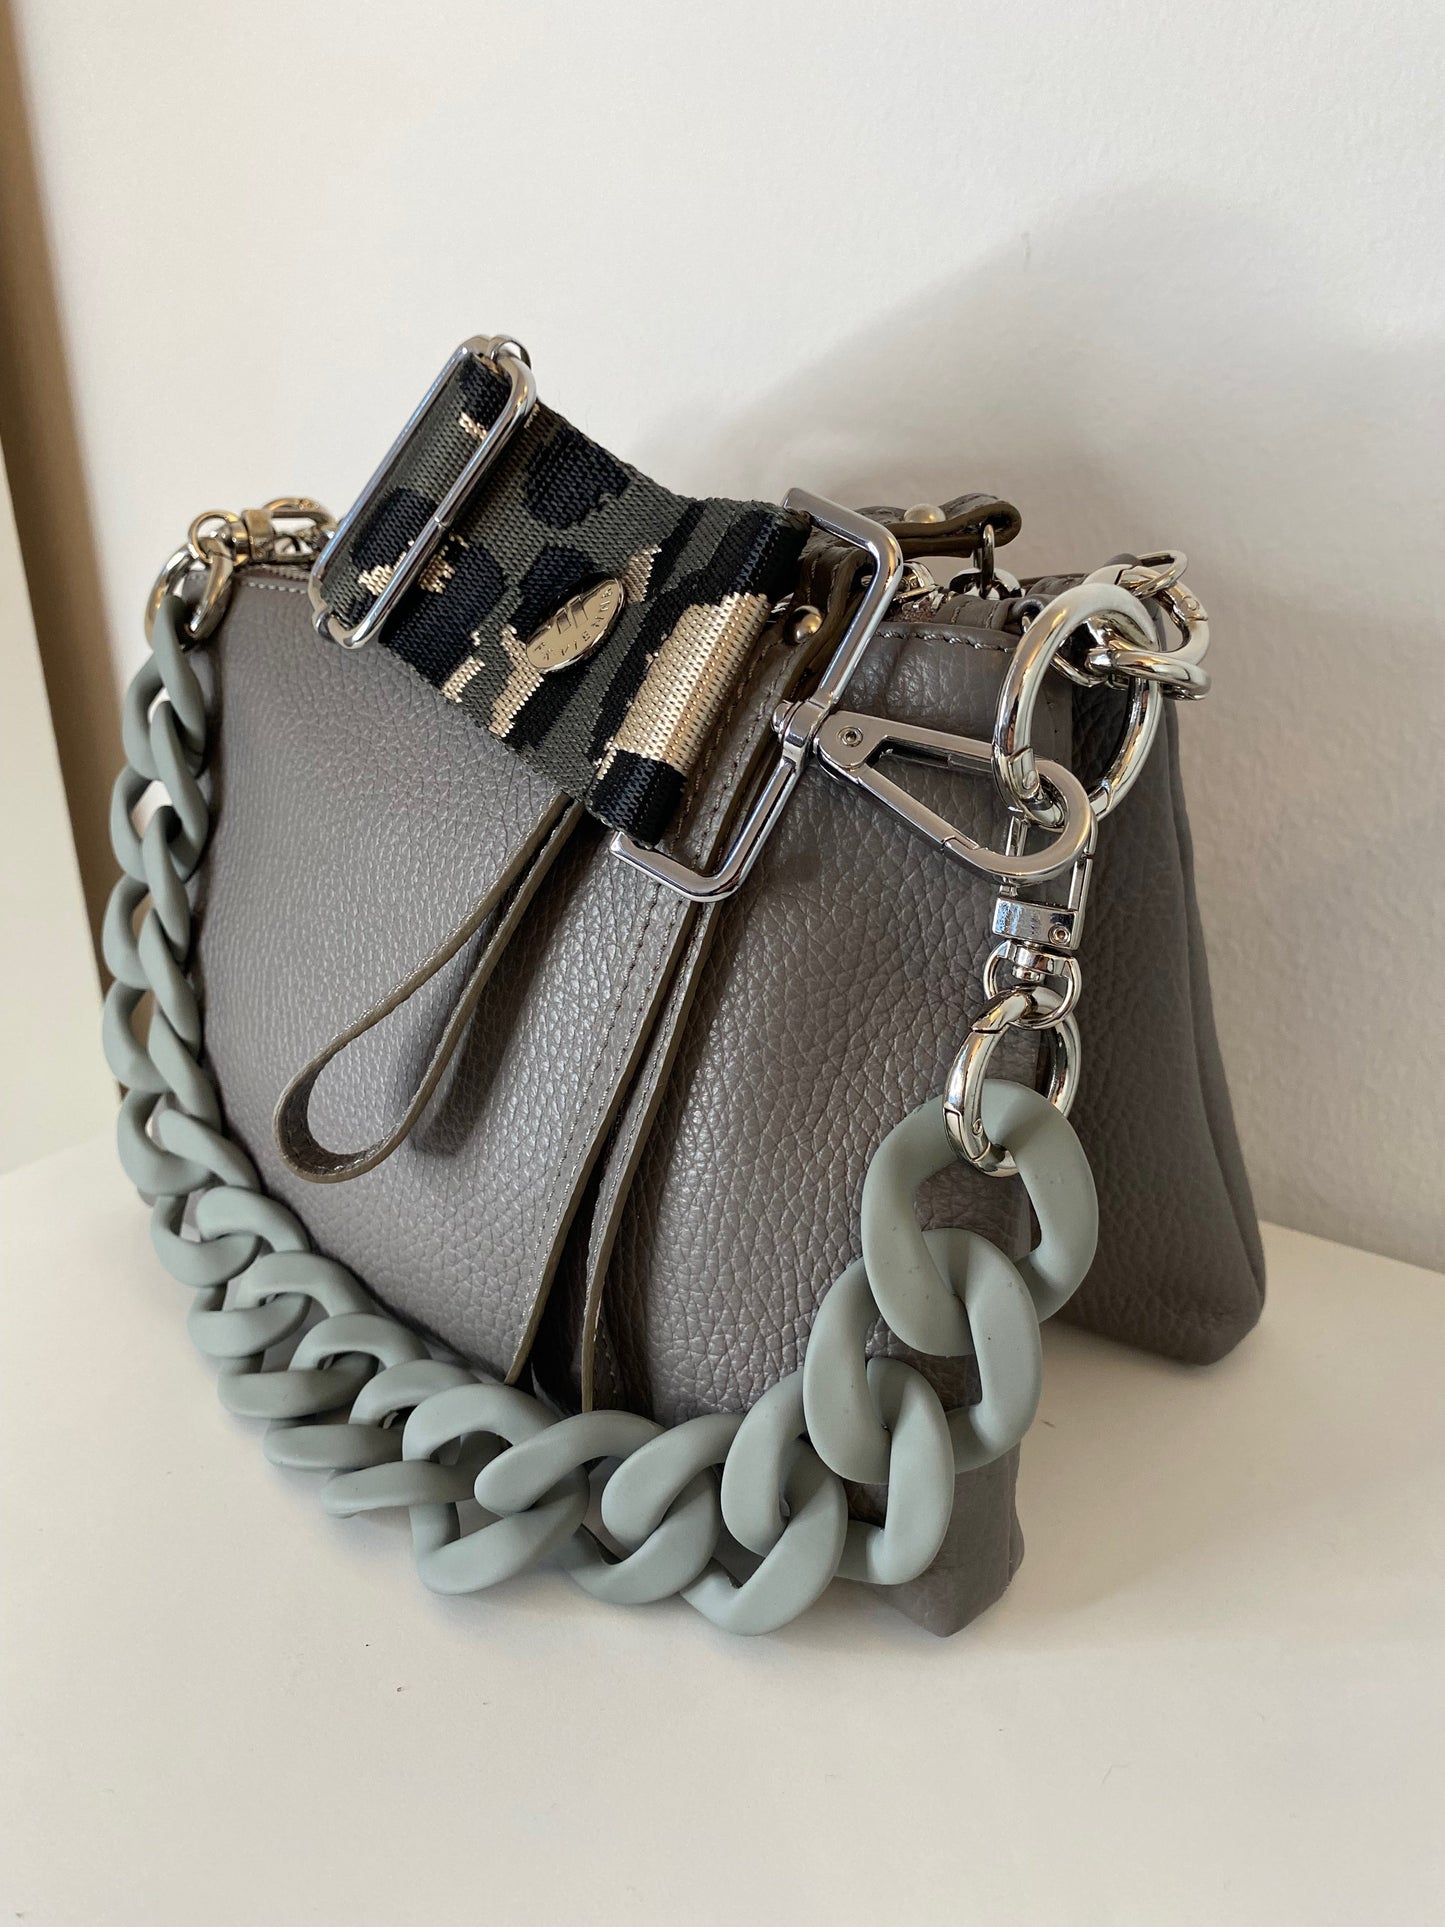 Anita-Bag Pearl Grey